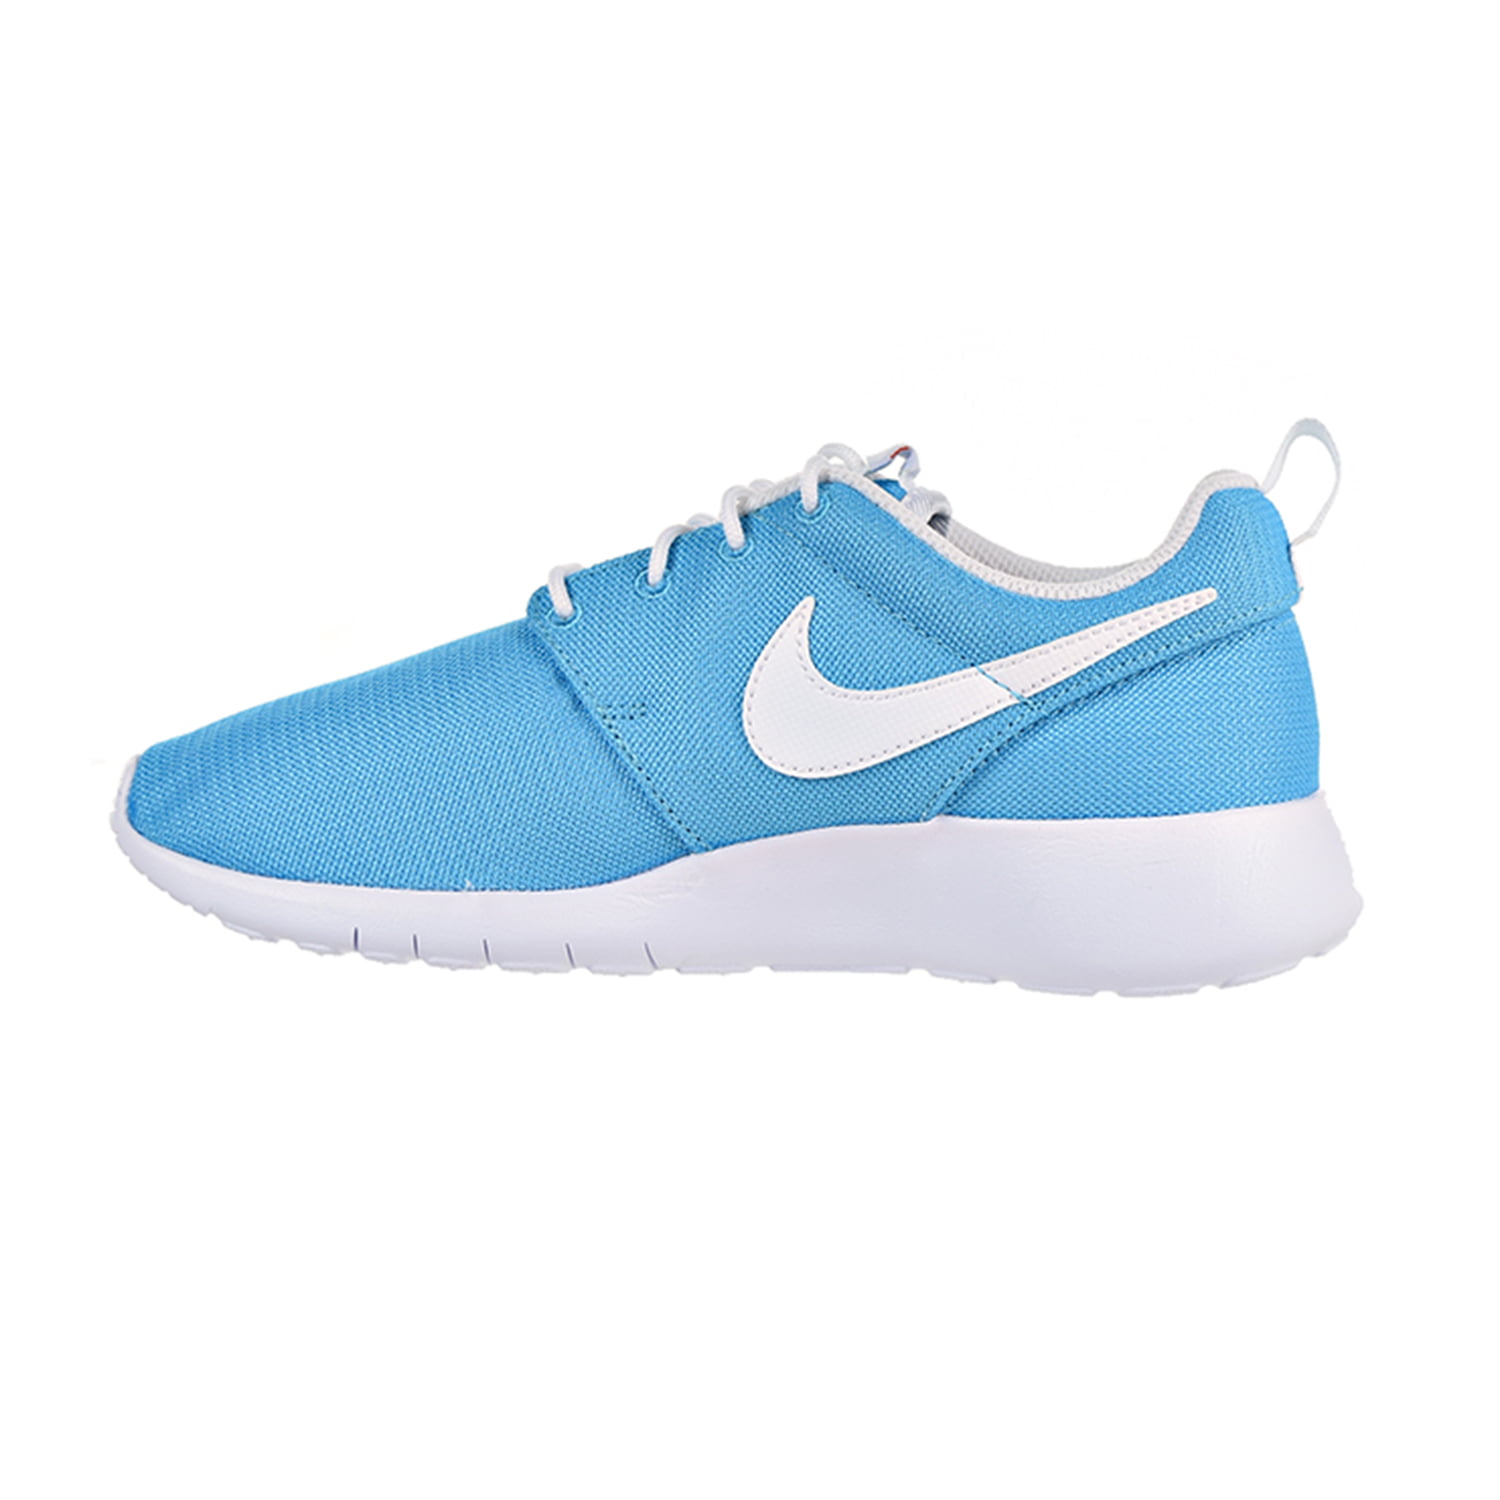 Nike One Boys Blue/White/Safety Orange 599729-412 -